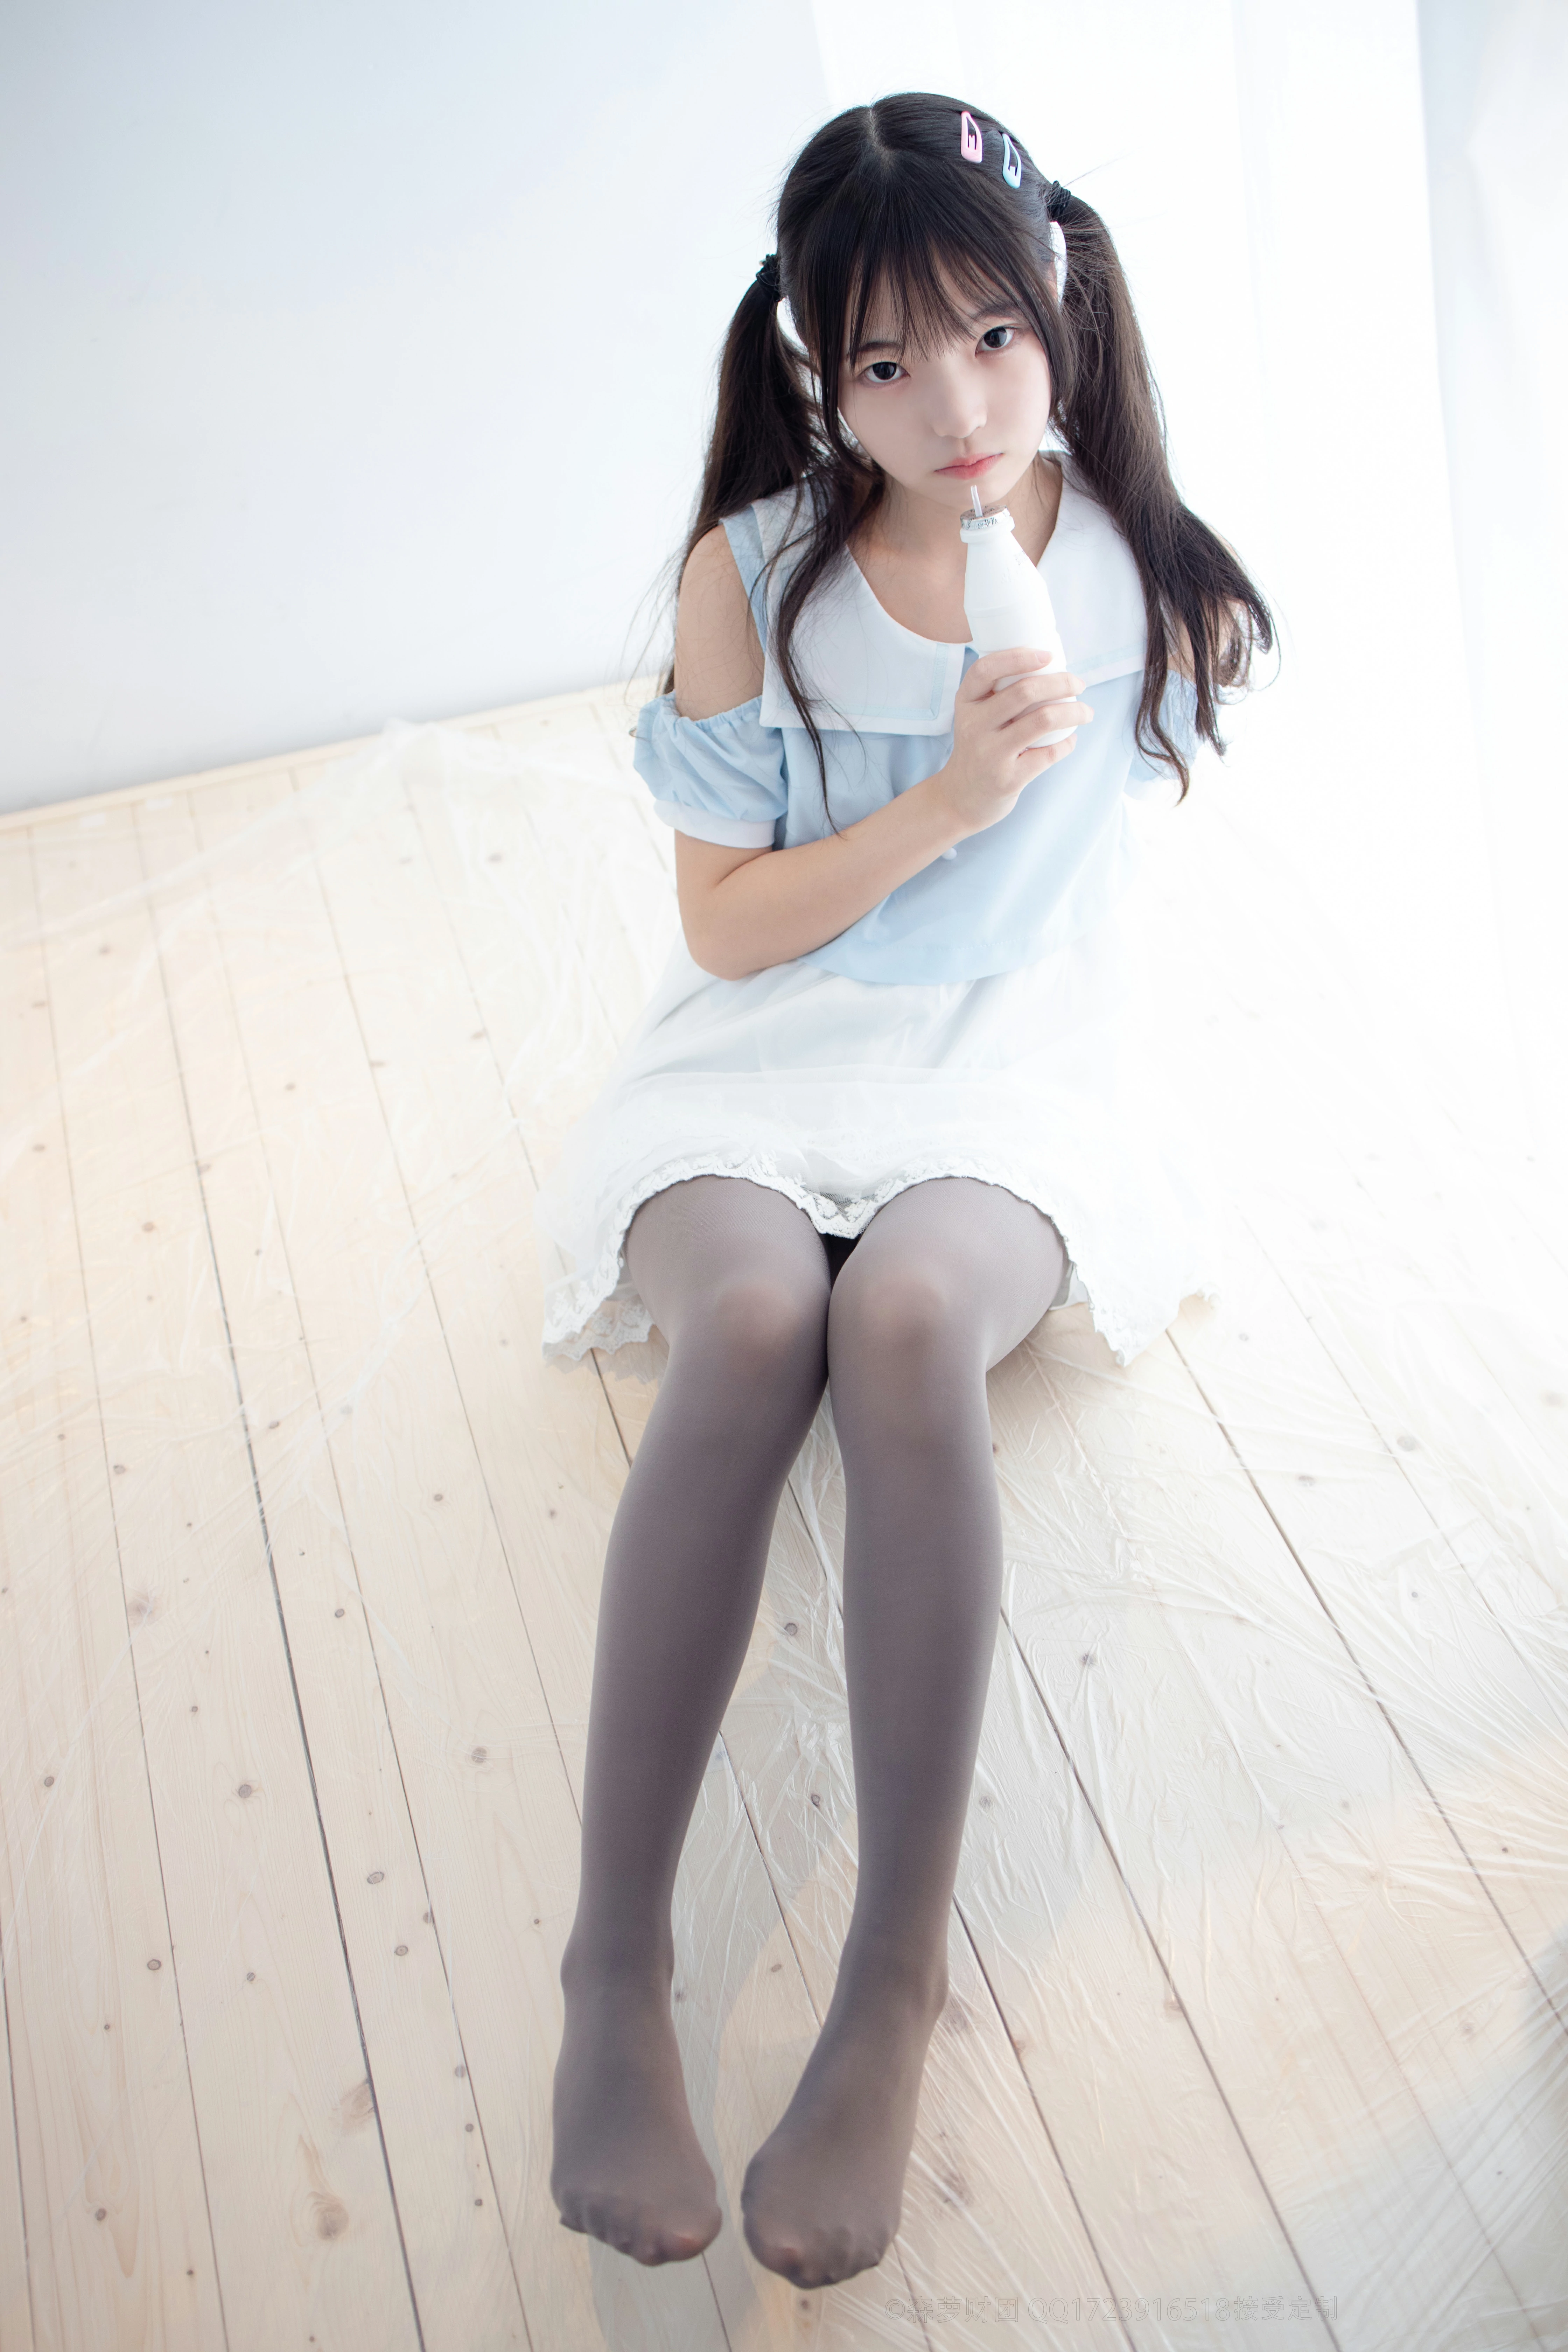 [森萝财团]X-054 清纯可爱小萝莉 蓝色短袖与白色蕾丝短裙加灰色丝袜美腿性感私房写真集,